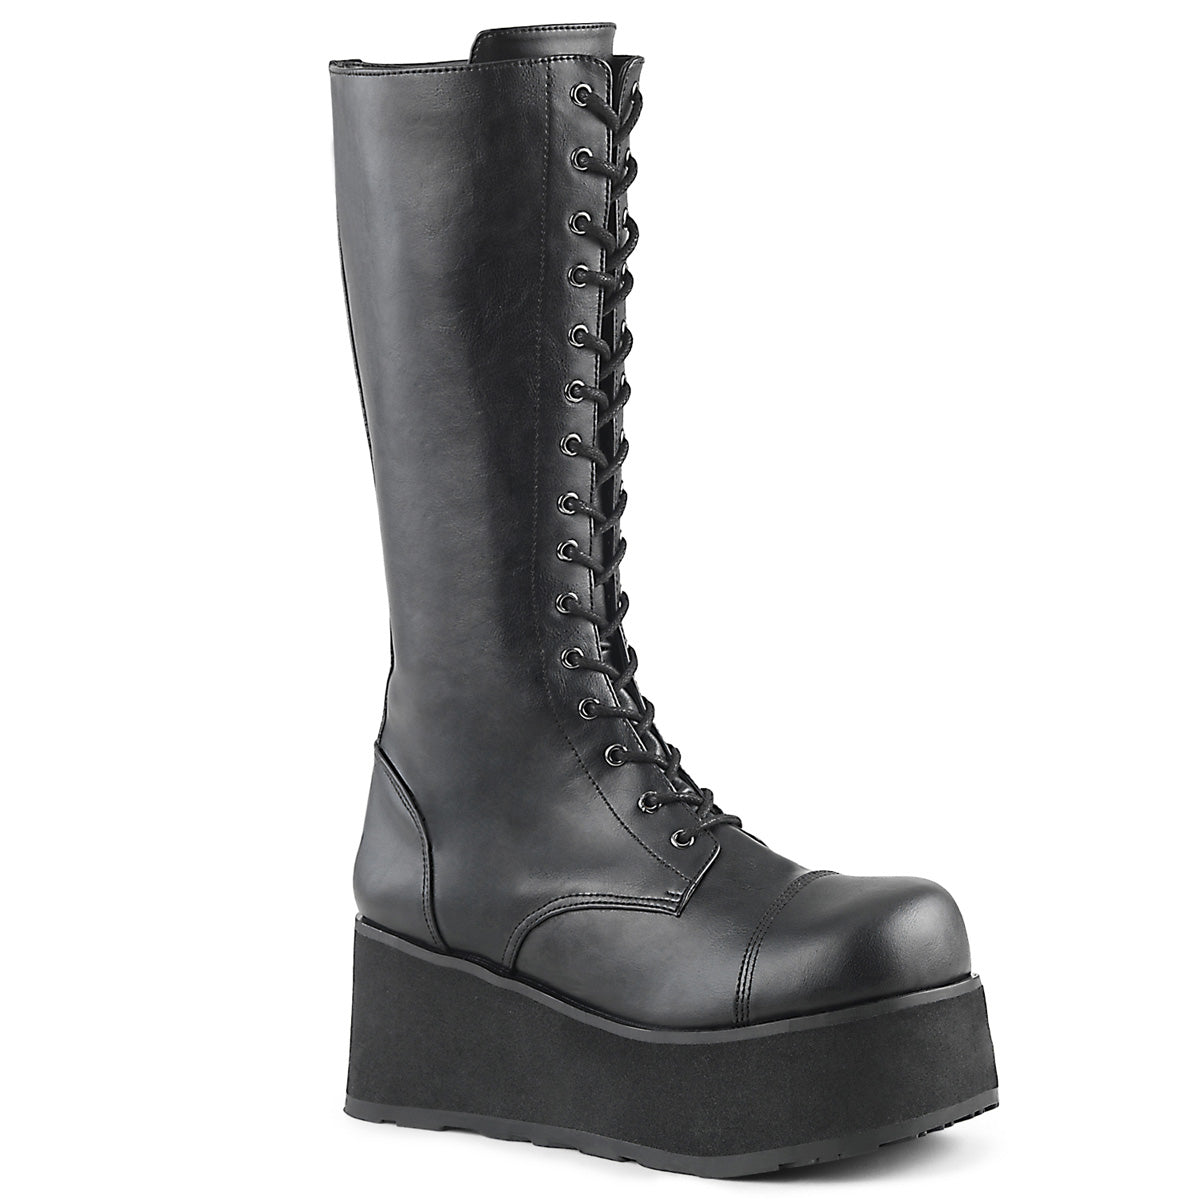 Trashville-502 Platform Black Boots (Unisex)